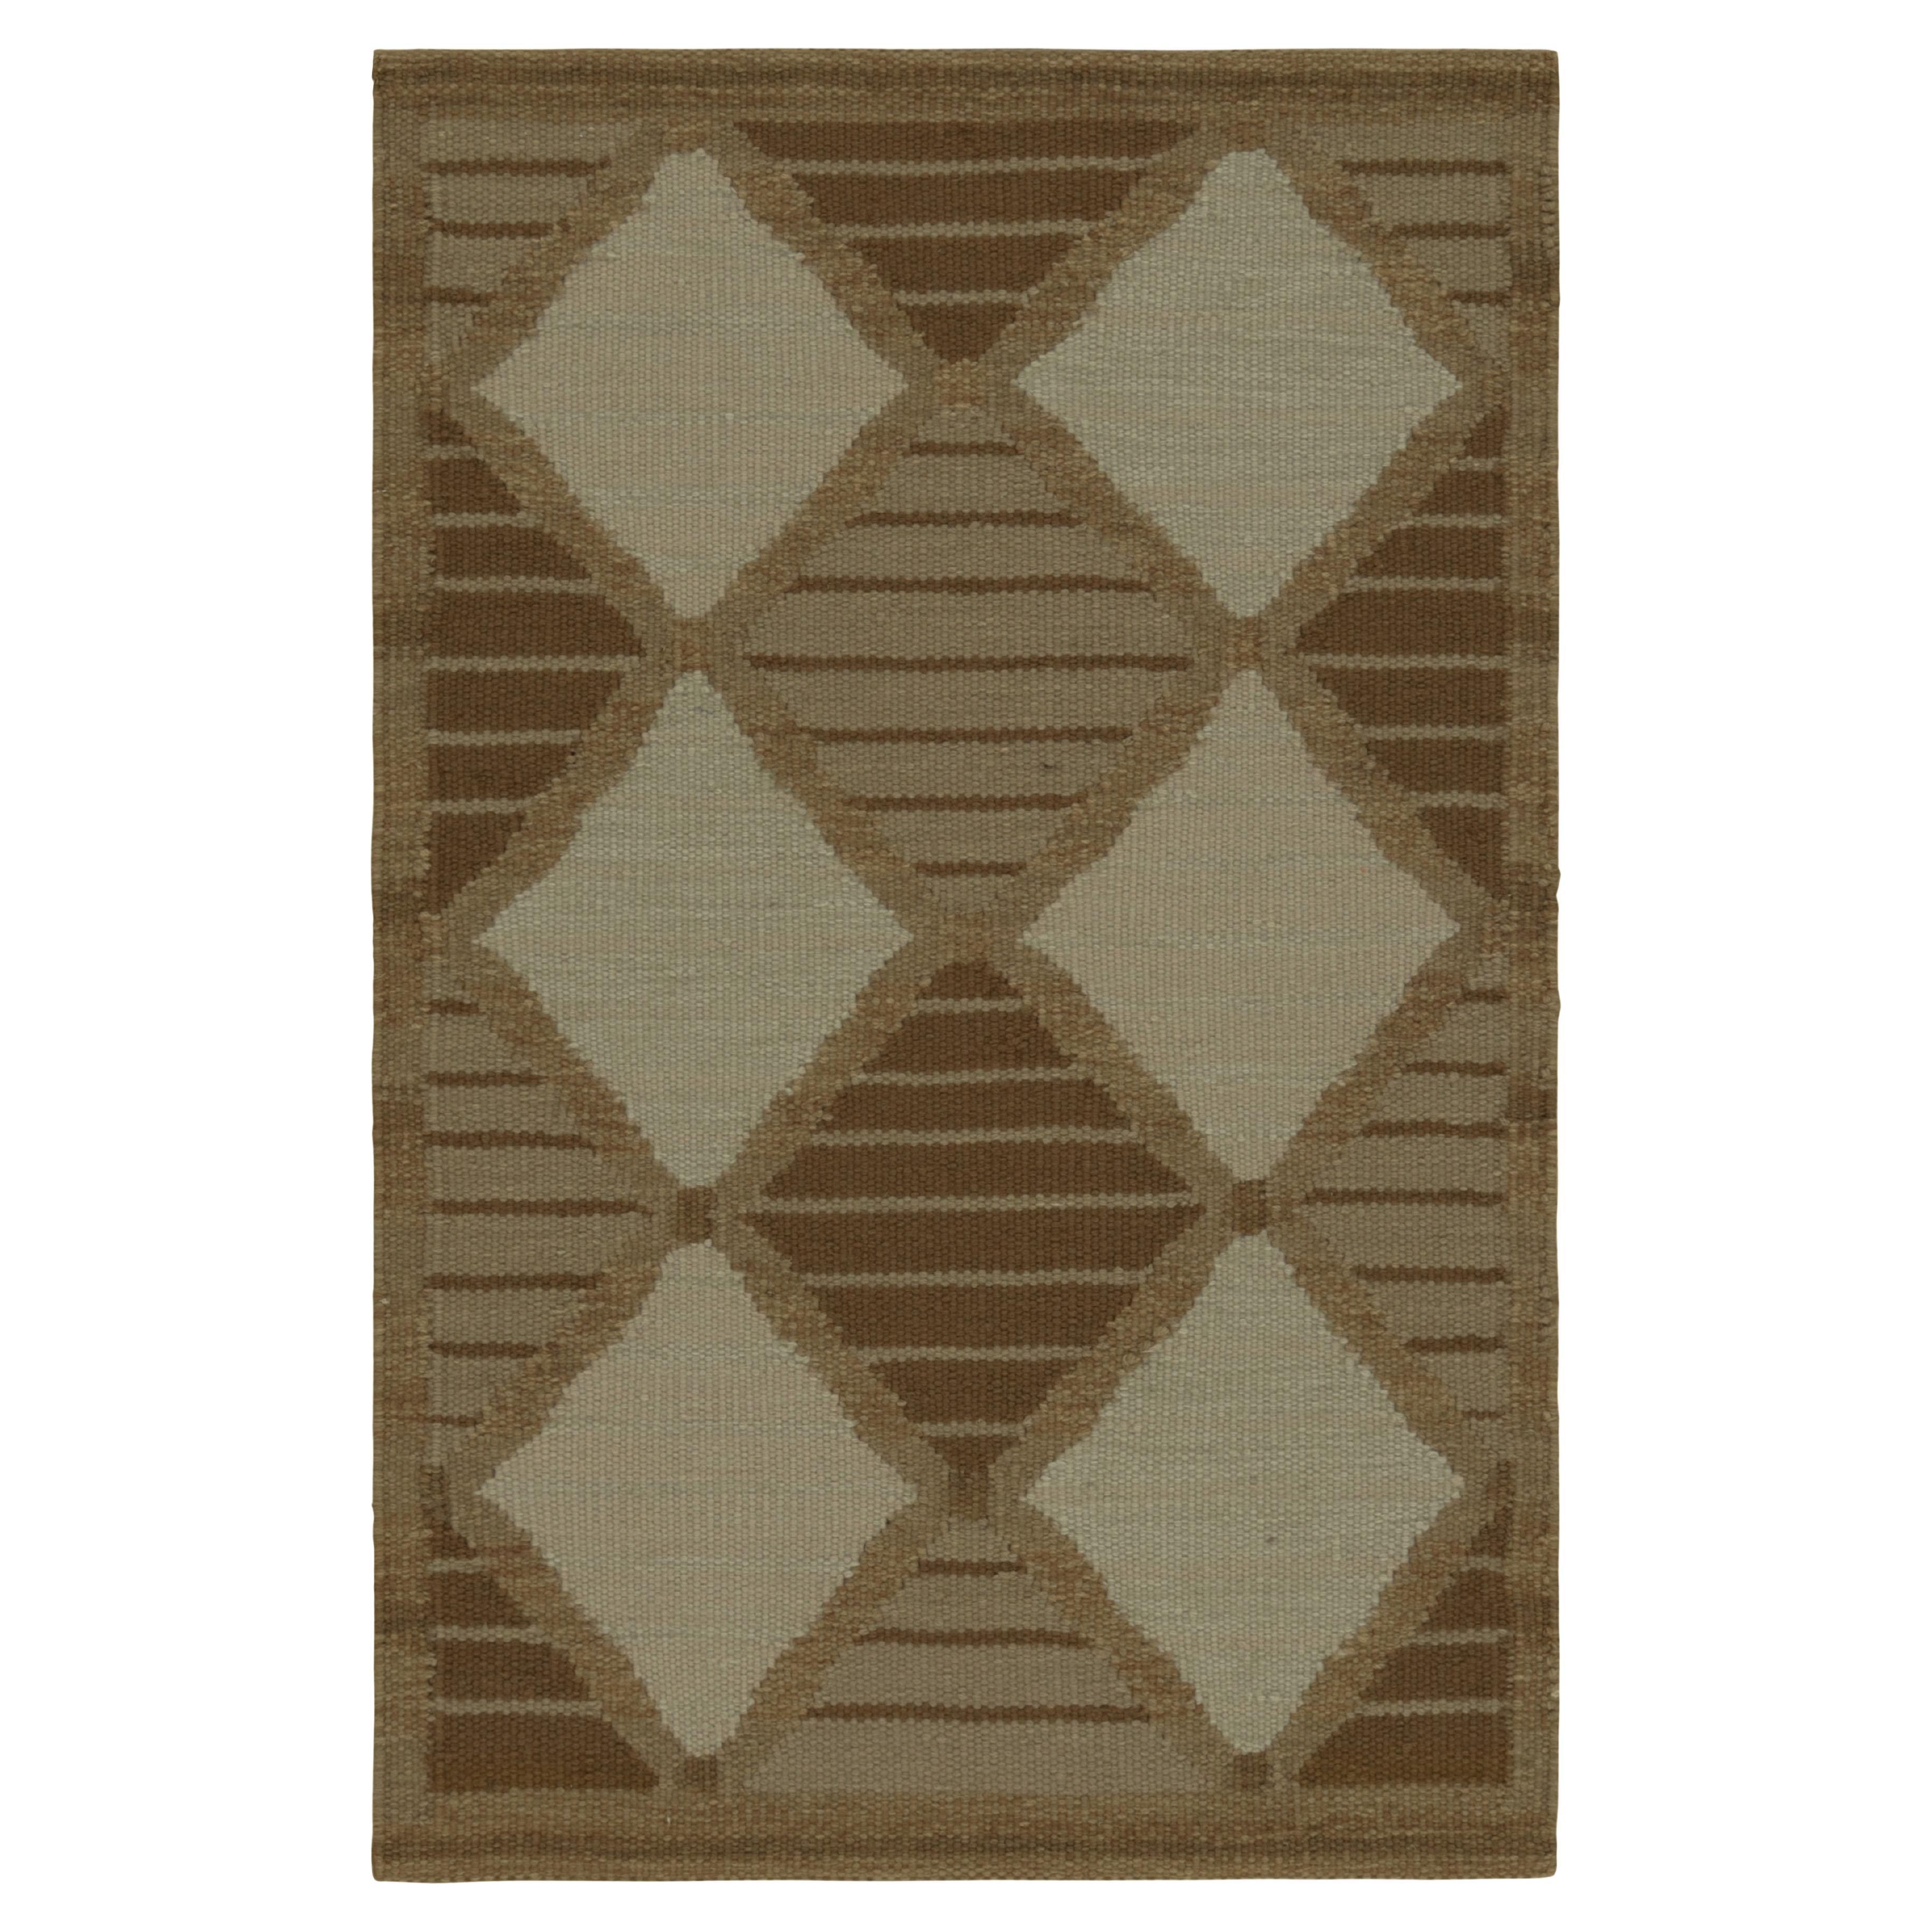 Rug & Kilim's Teppich im skandinavischen Stil mit beige- und taupefarbenen Rauten und Streifen